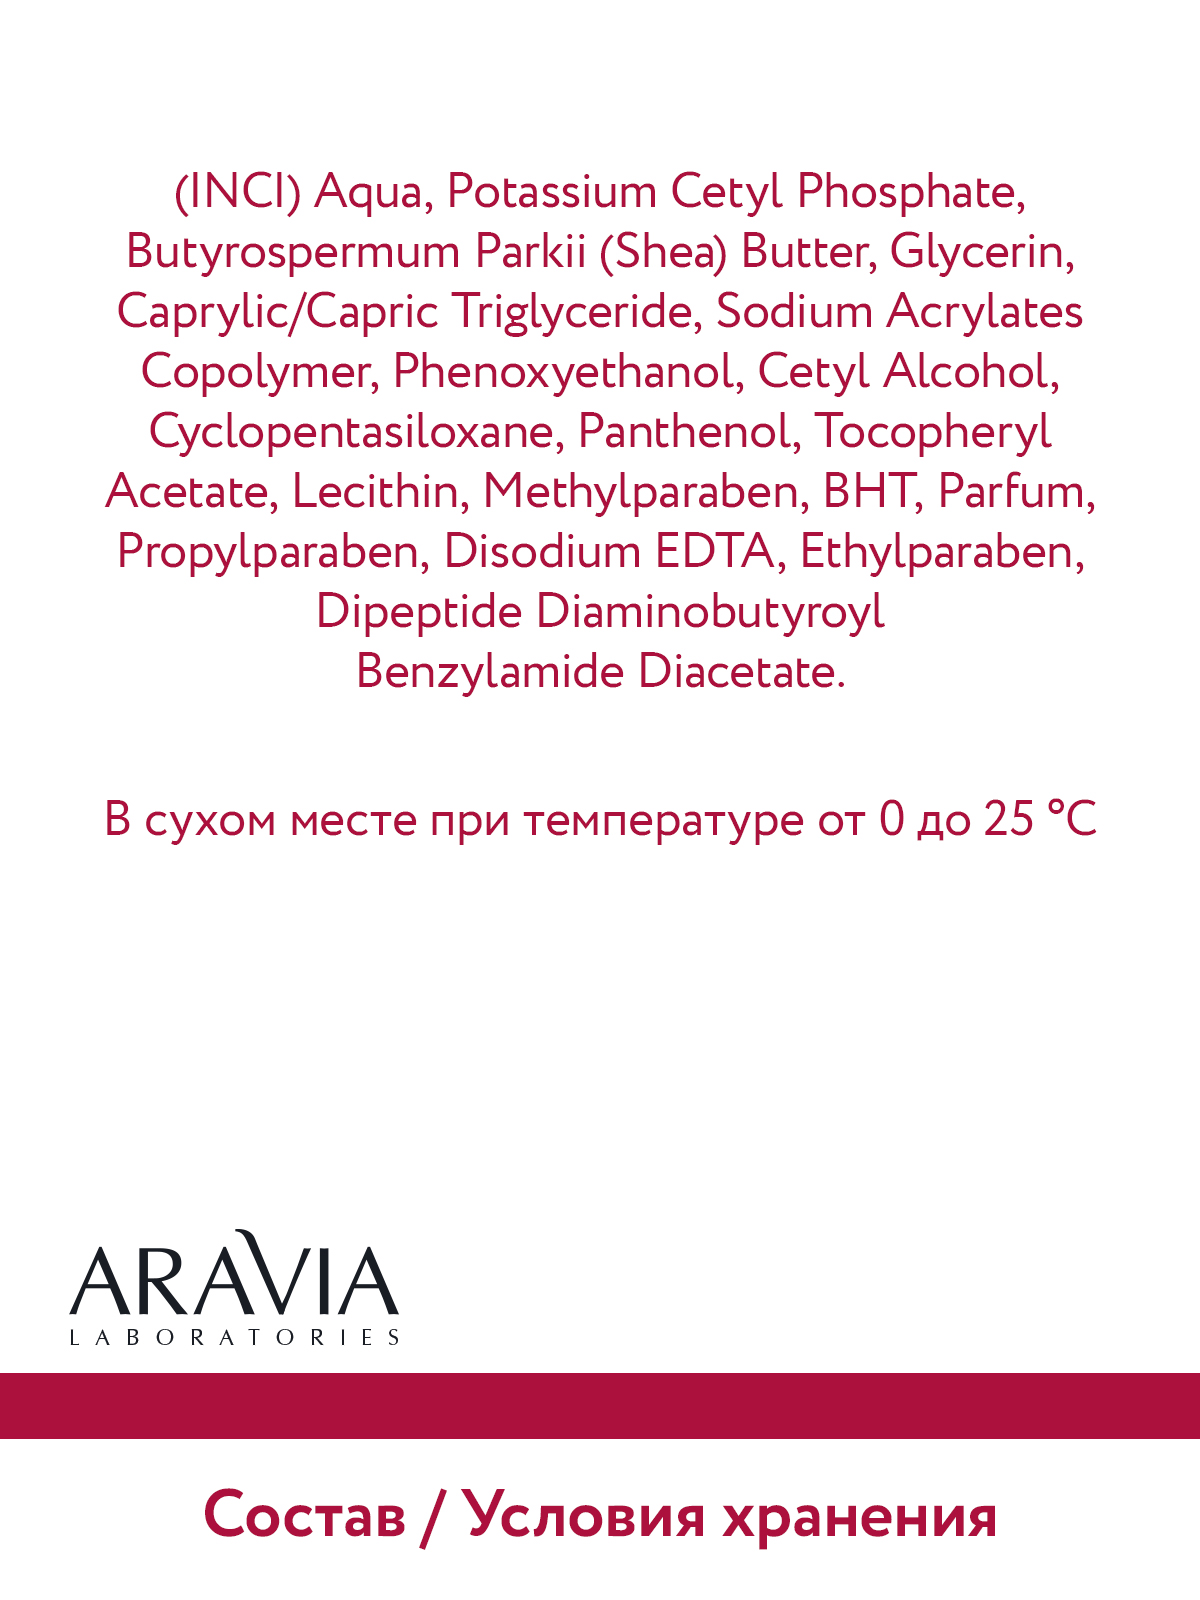 Крем для лица ARAVIA Laboratories от морщин с пептидами Peptide Ampoule Firming Cream 50 мл - фото 11